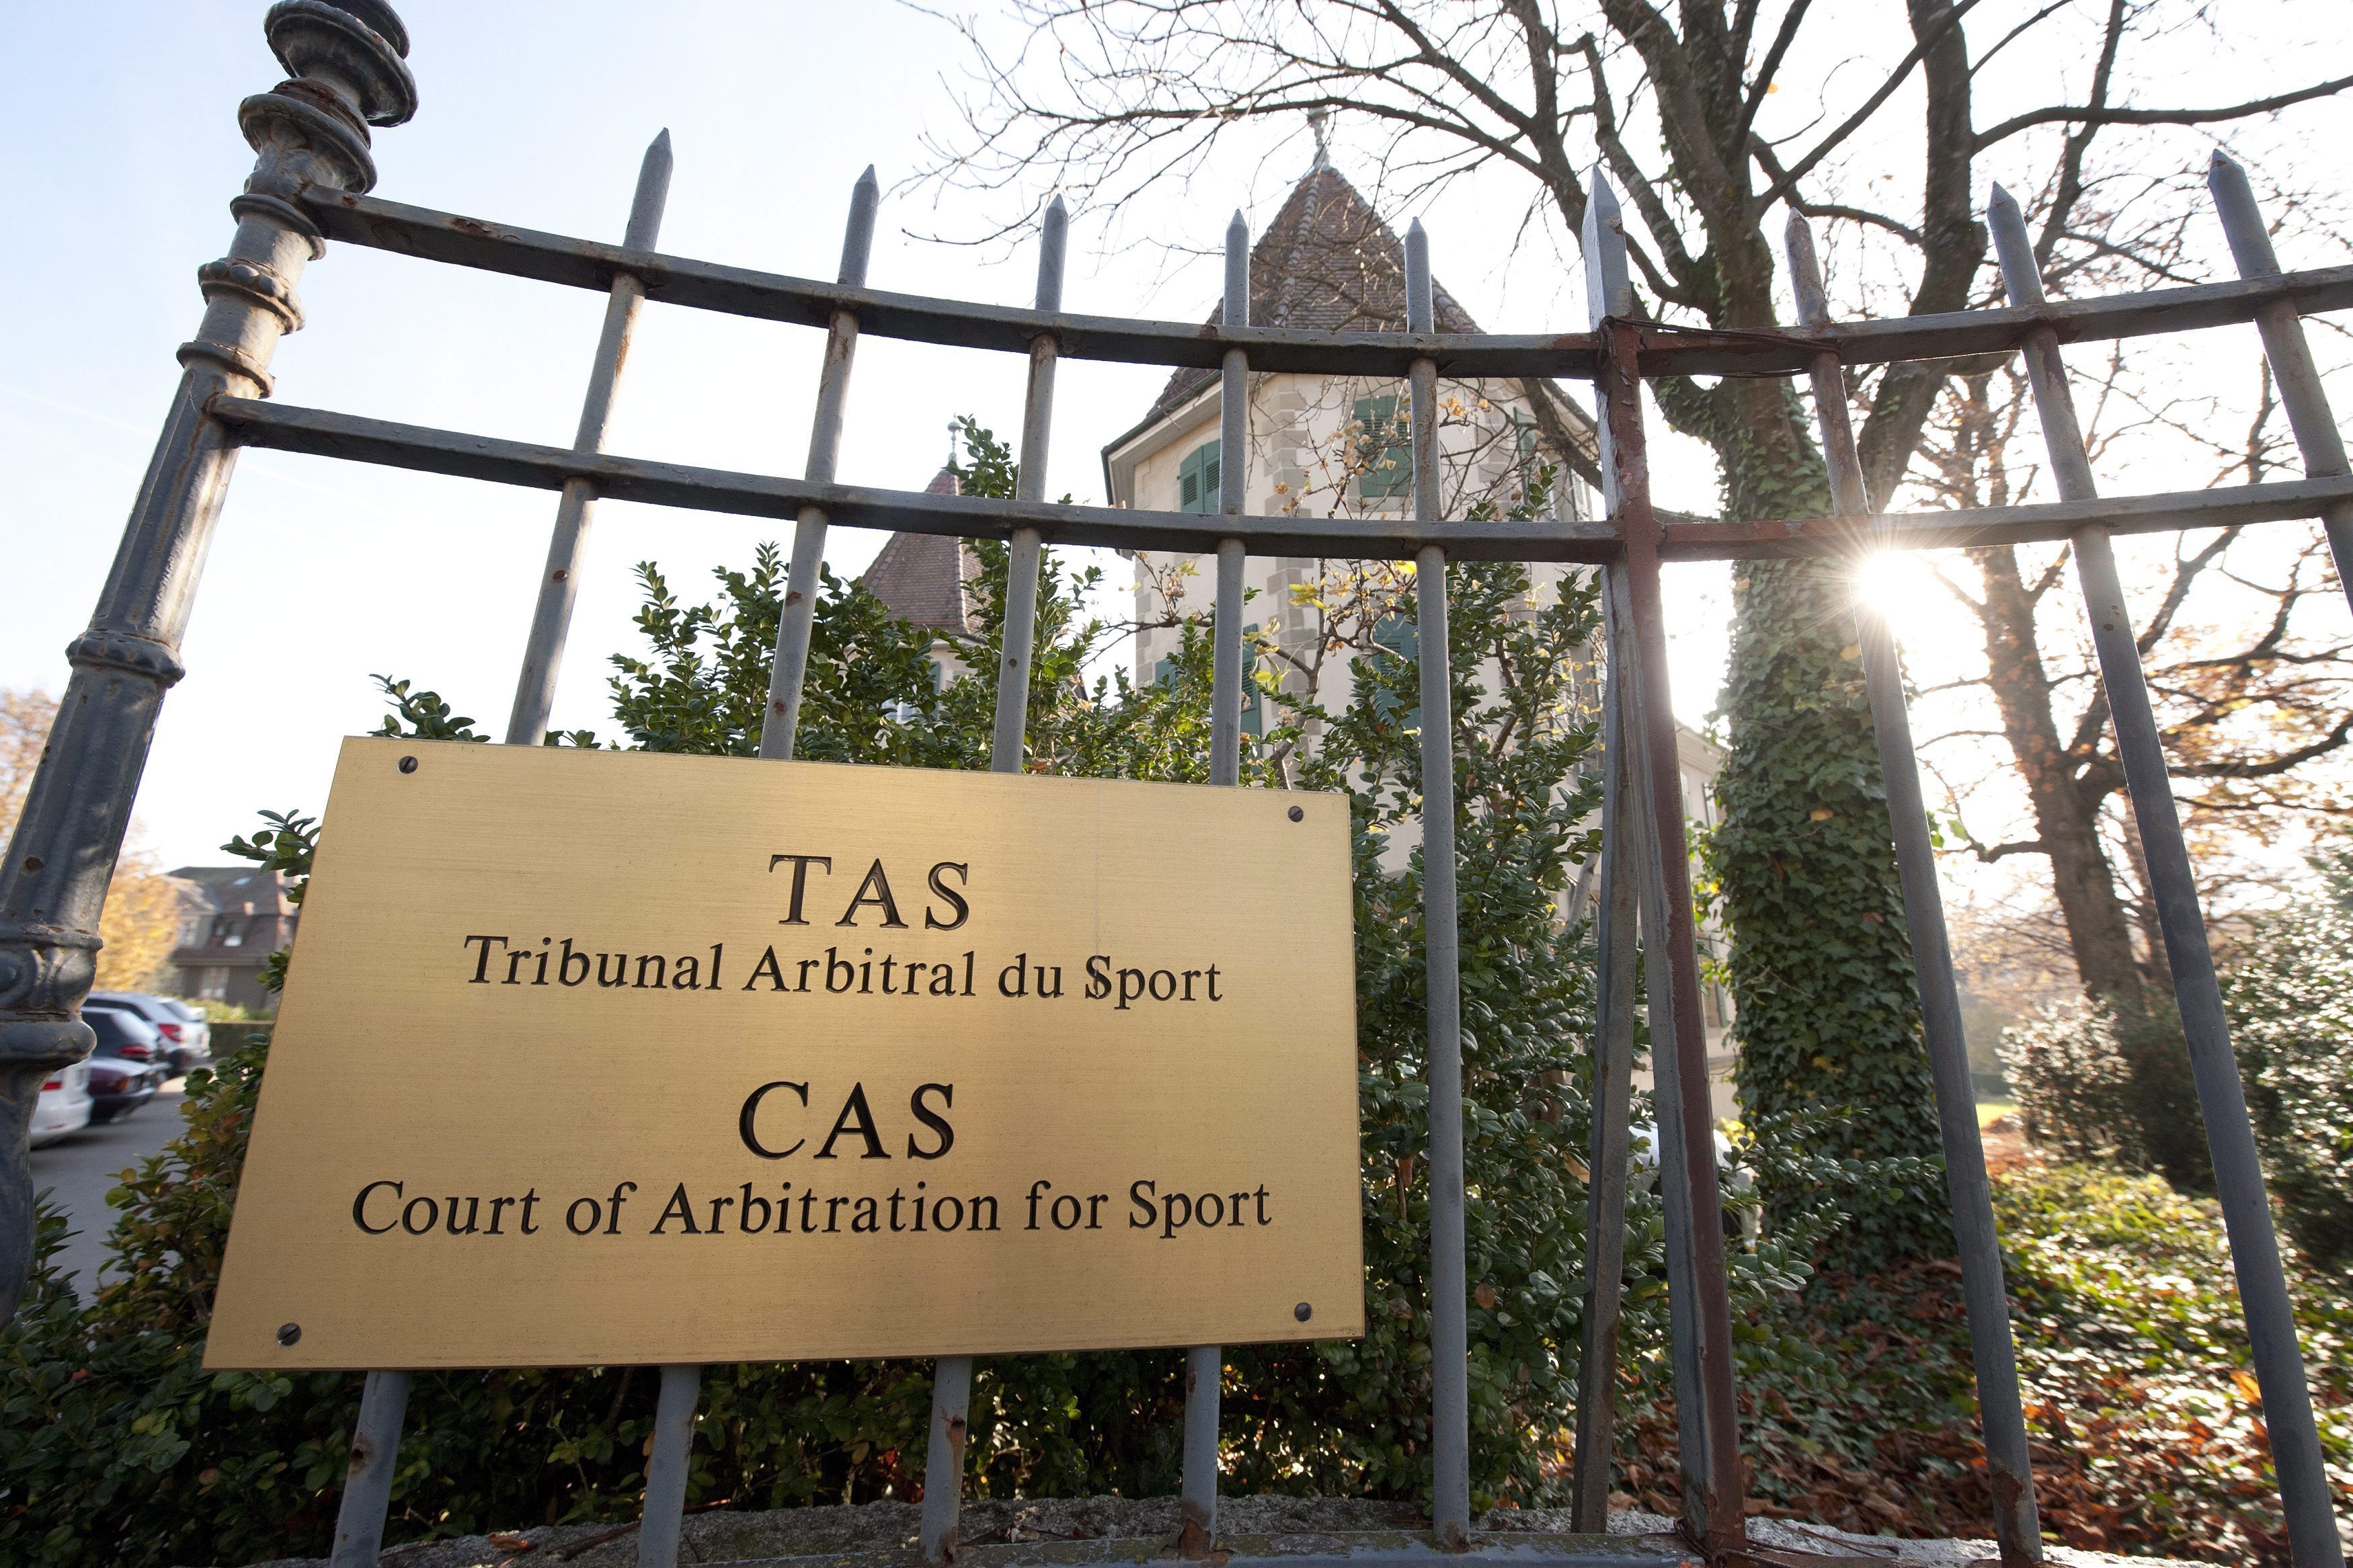 Sede del Tribunal de Arbitraje Deportivo (TAS) en Lausana (Suiza). EFE/DOMINIC FAVRE/Archivo

